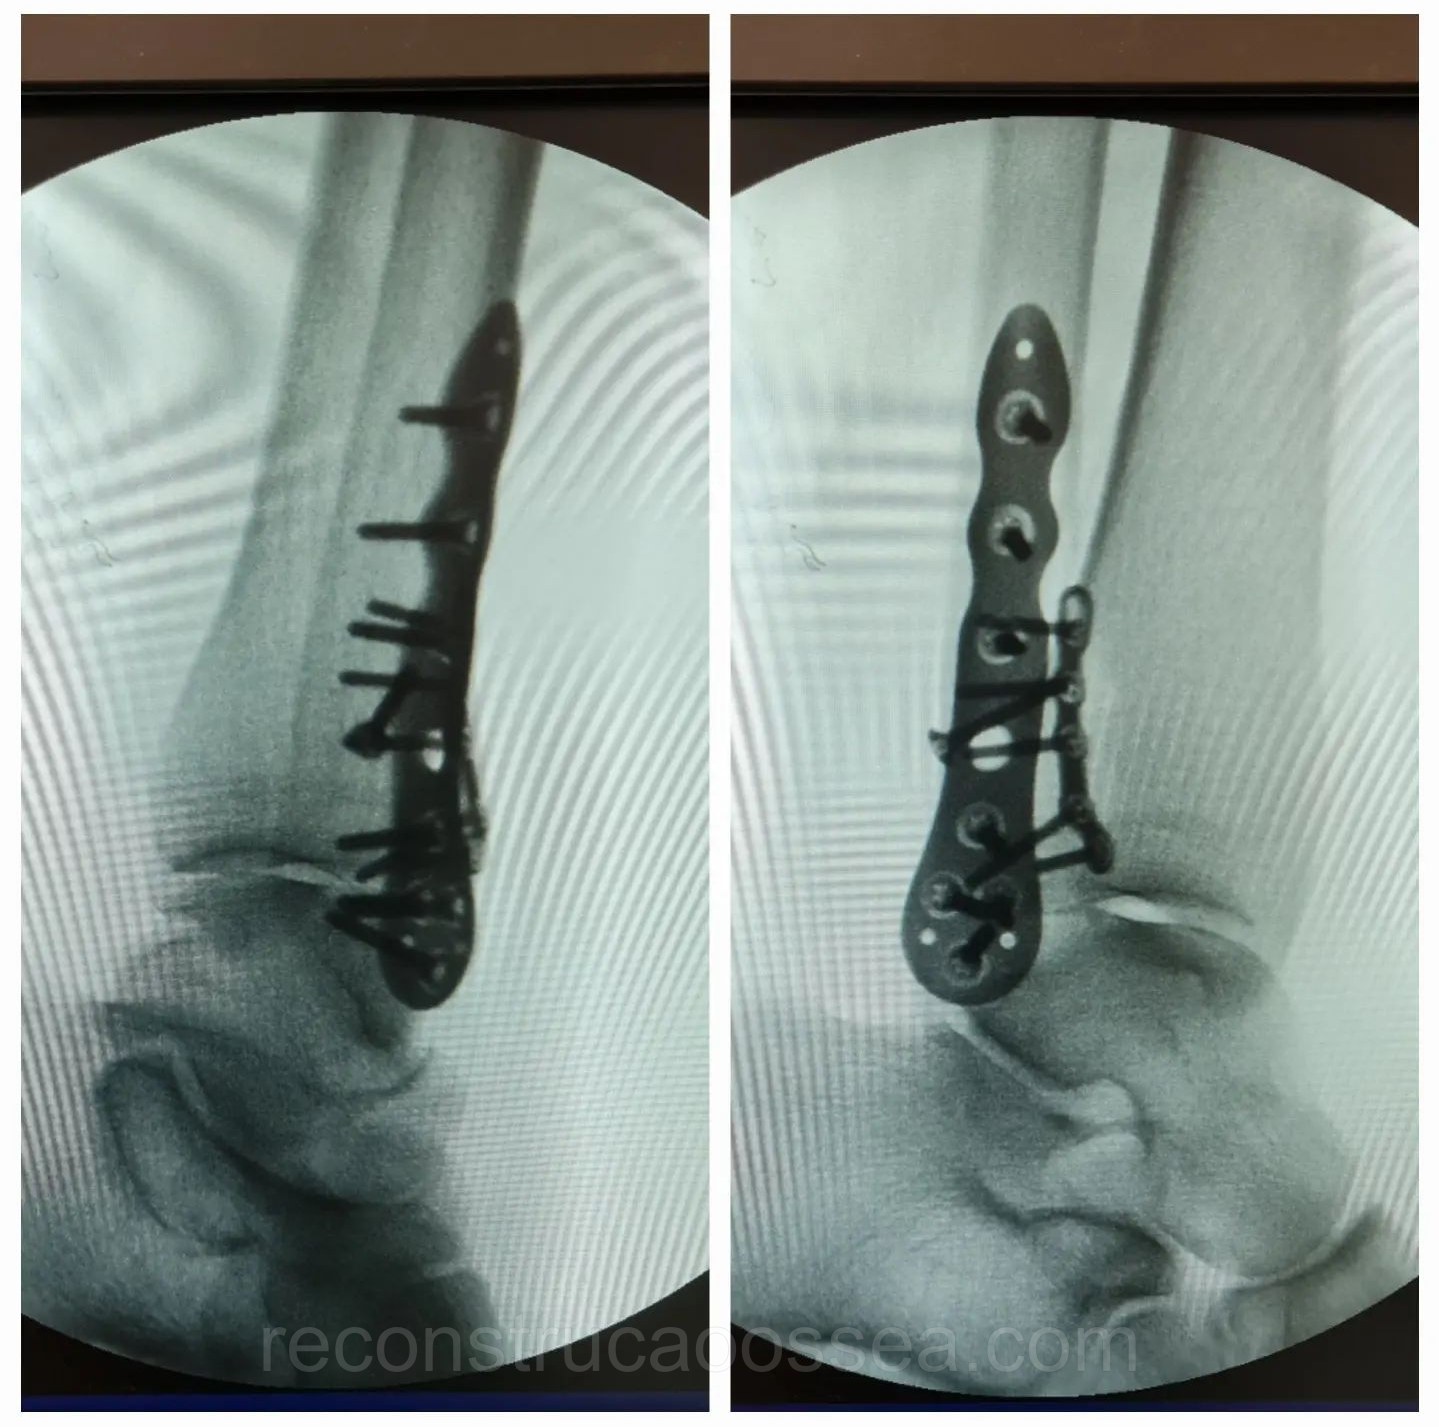 fratura-do-tornozelo-tratamento-cirurgico-23